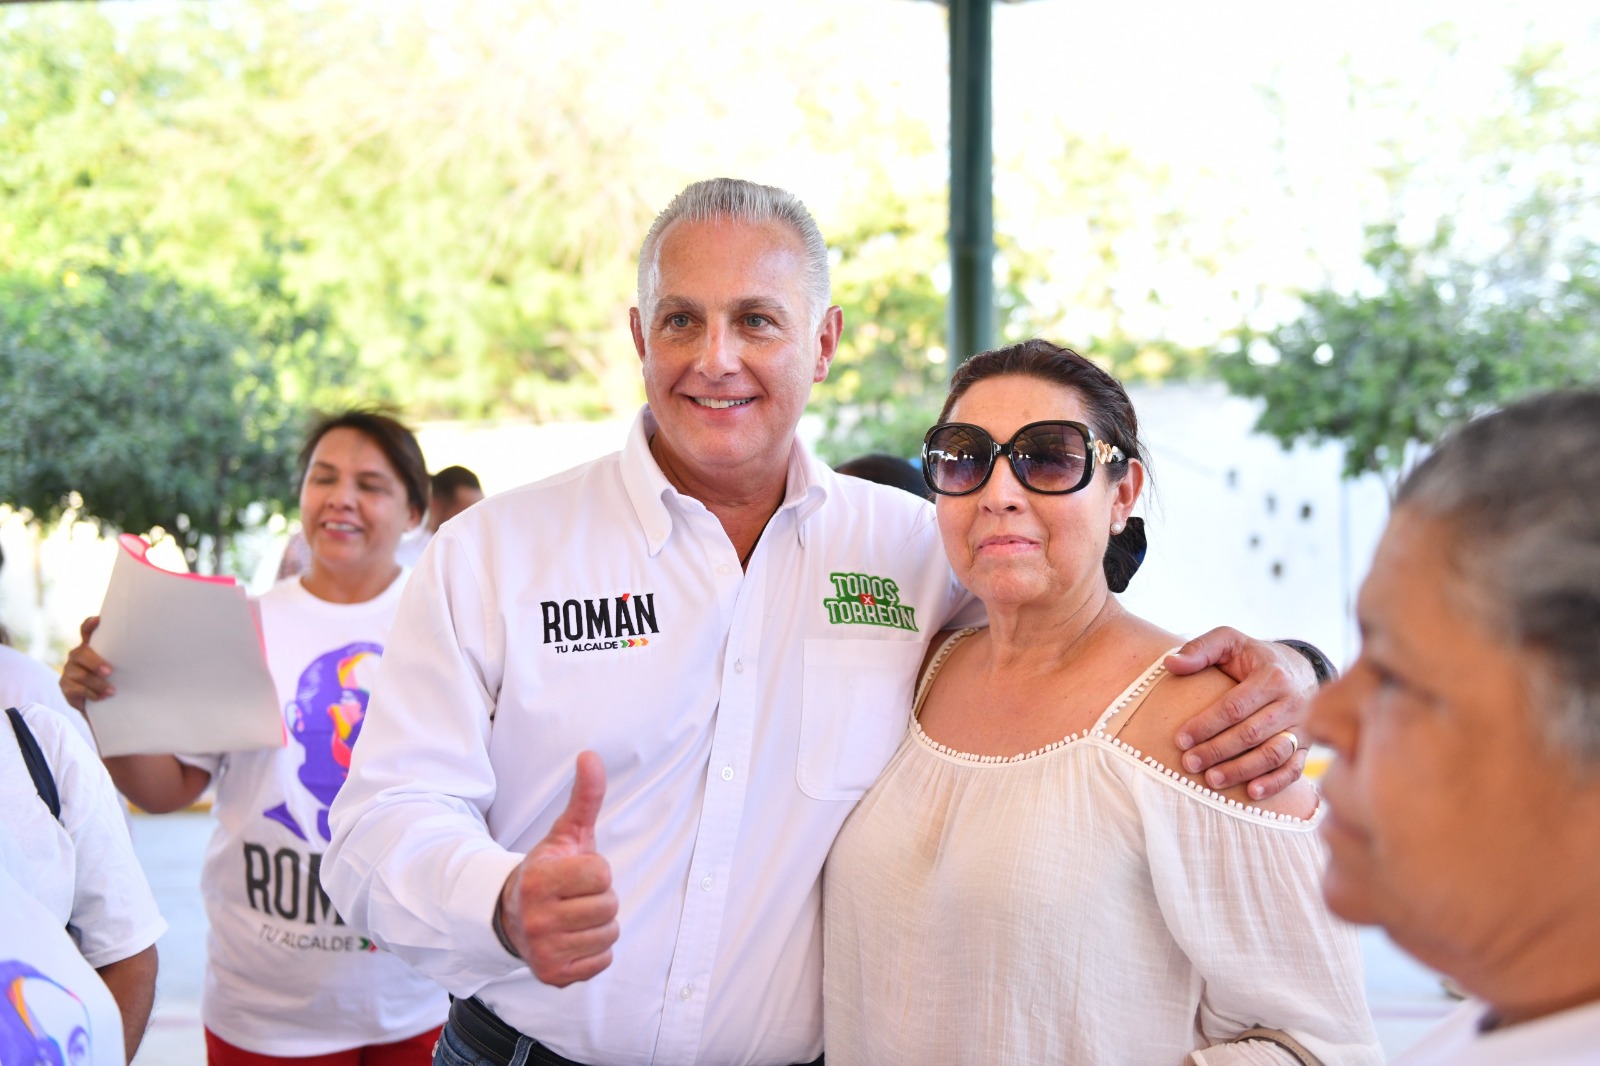 “Vamos a redoblar esfuerzos… Por el bien de Torreón, seguiremos trabajando” Roman Cepeda